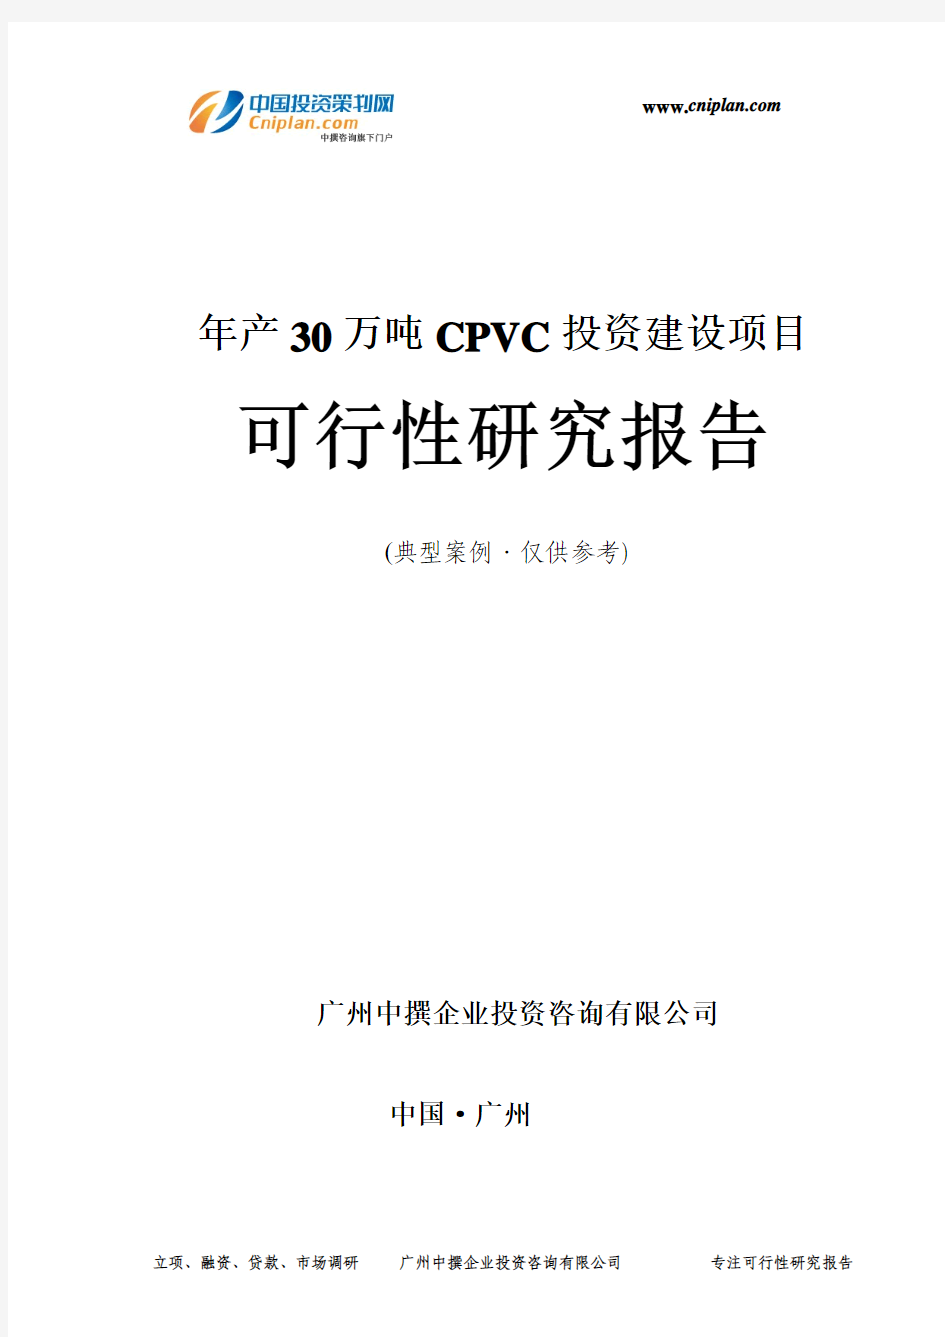 年产30万吨CPVC投资建设项目可行性研究报告-广州中撰咨询